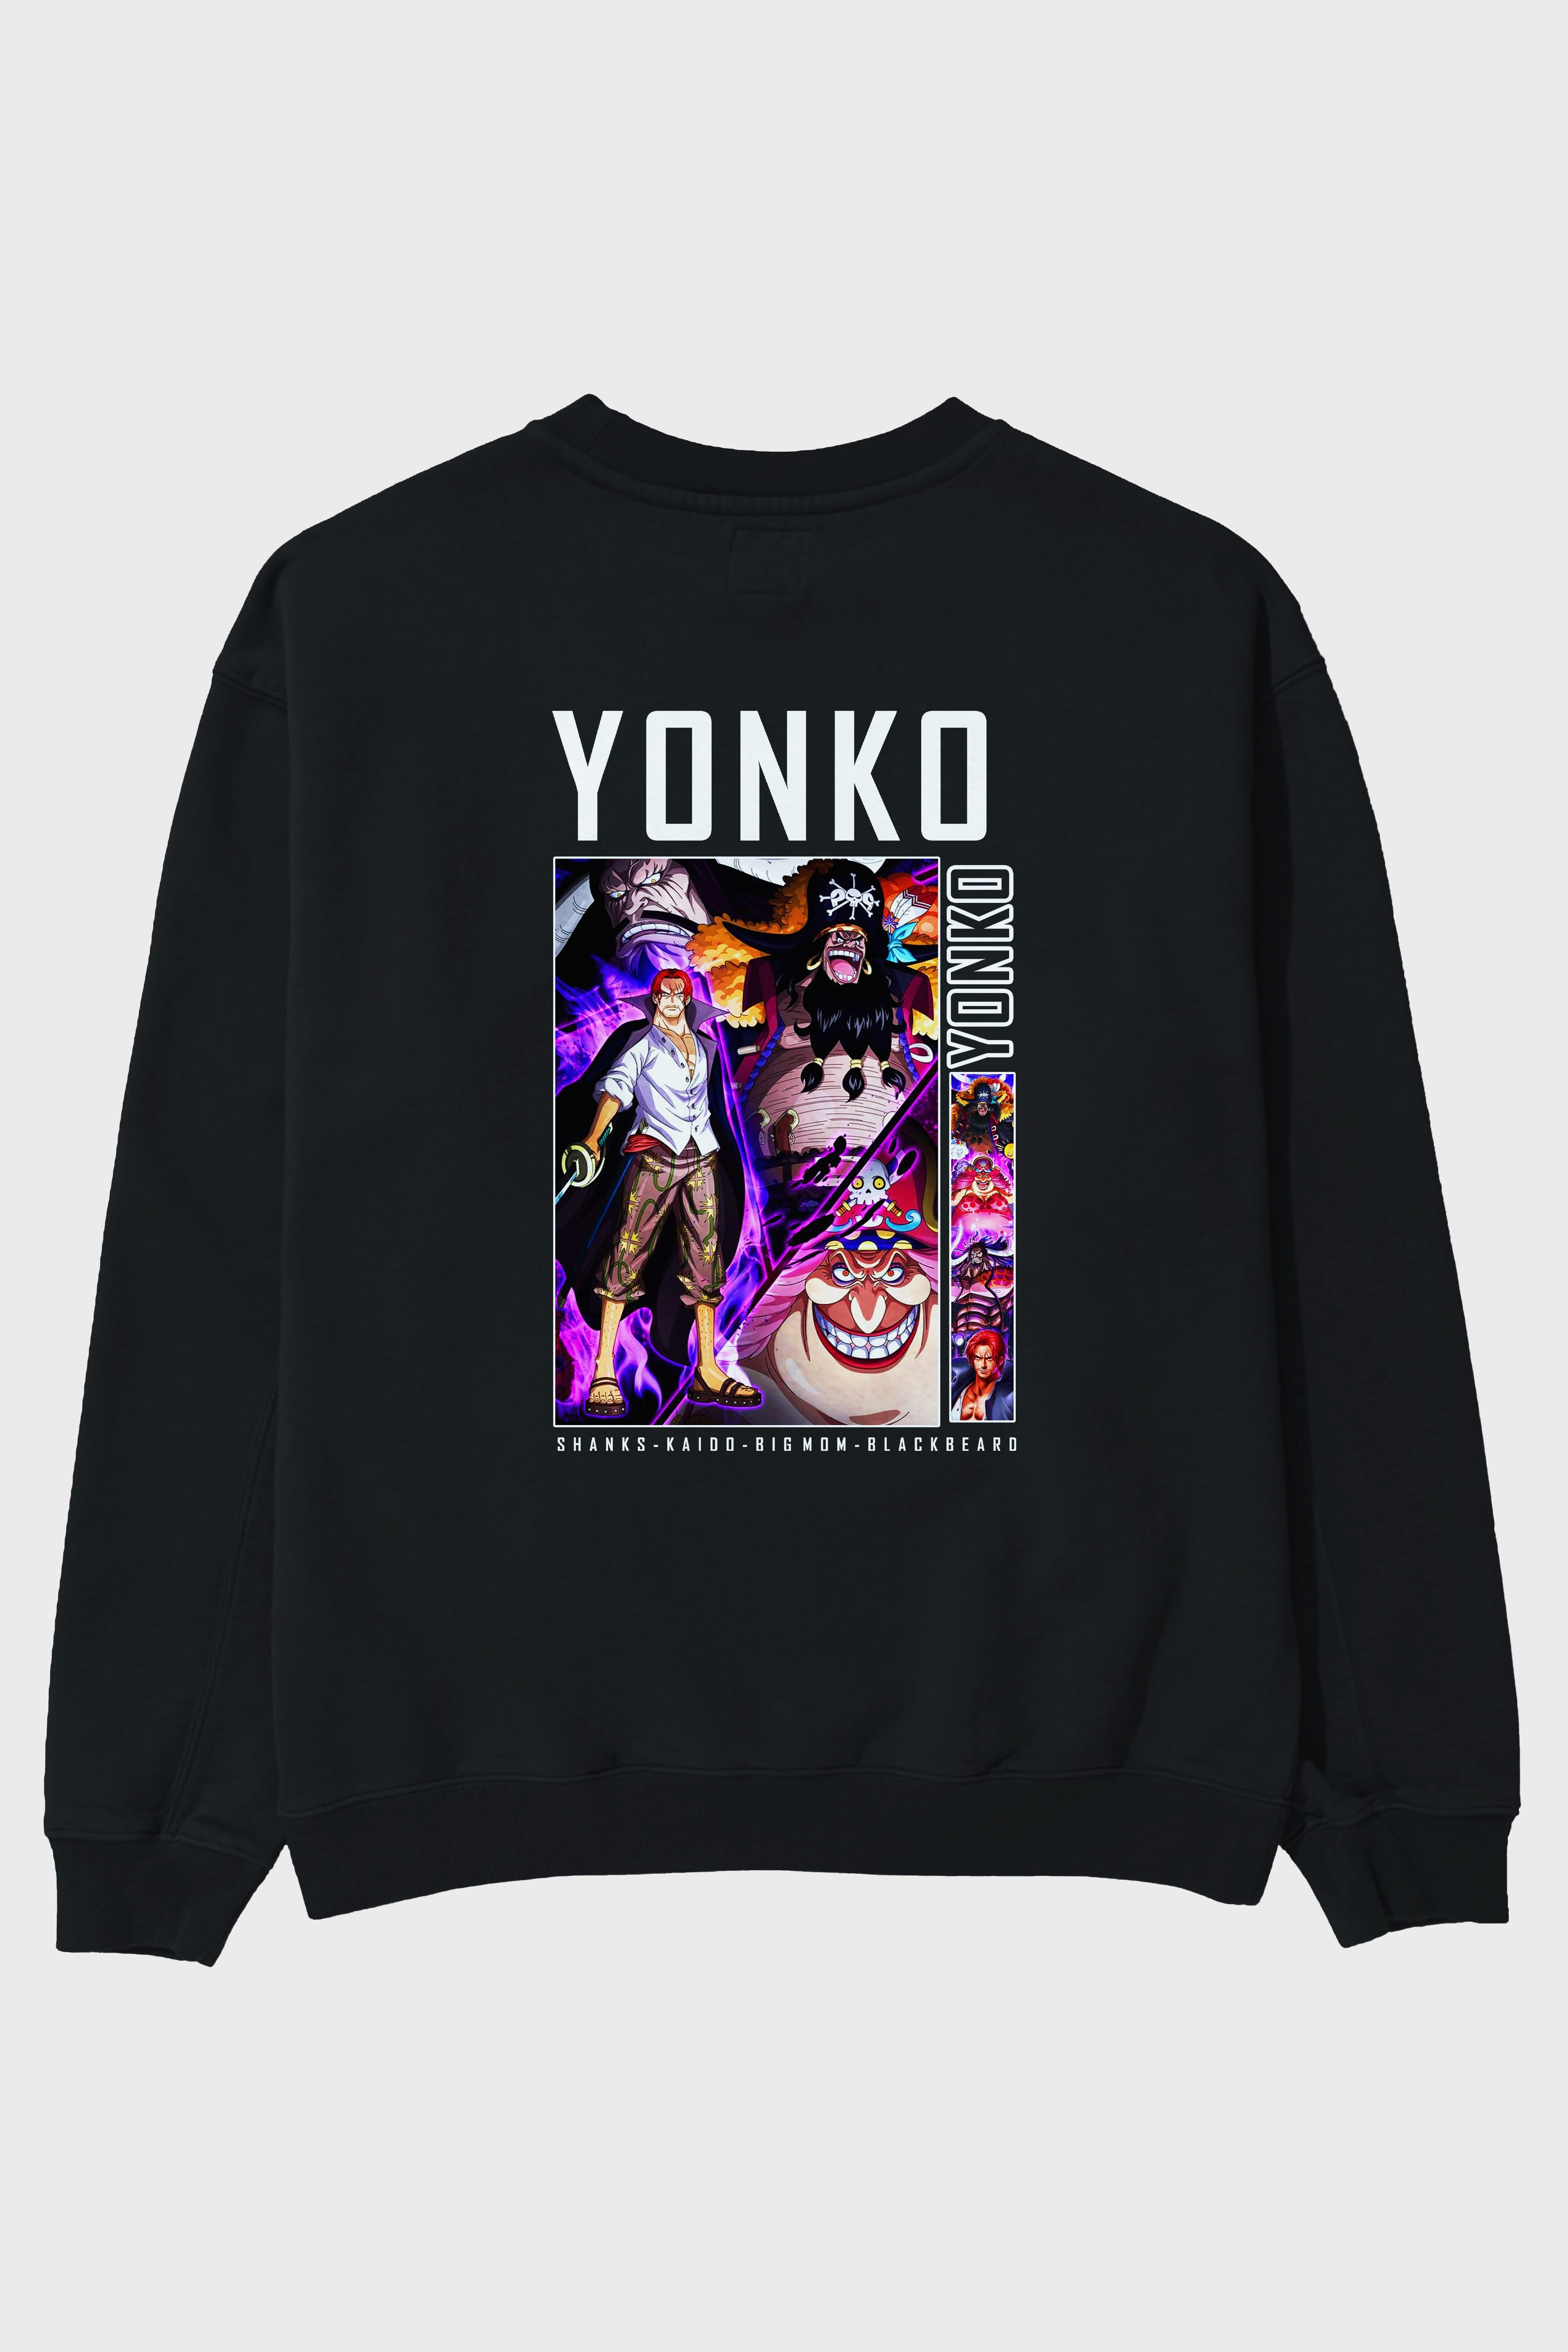 Yonko Arka Baskılı Anime Oversize Sweatshirt Erkek Kadın Unisex